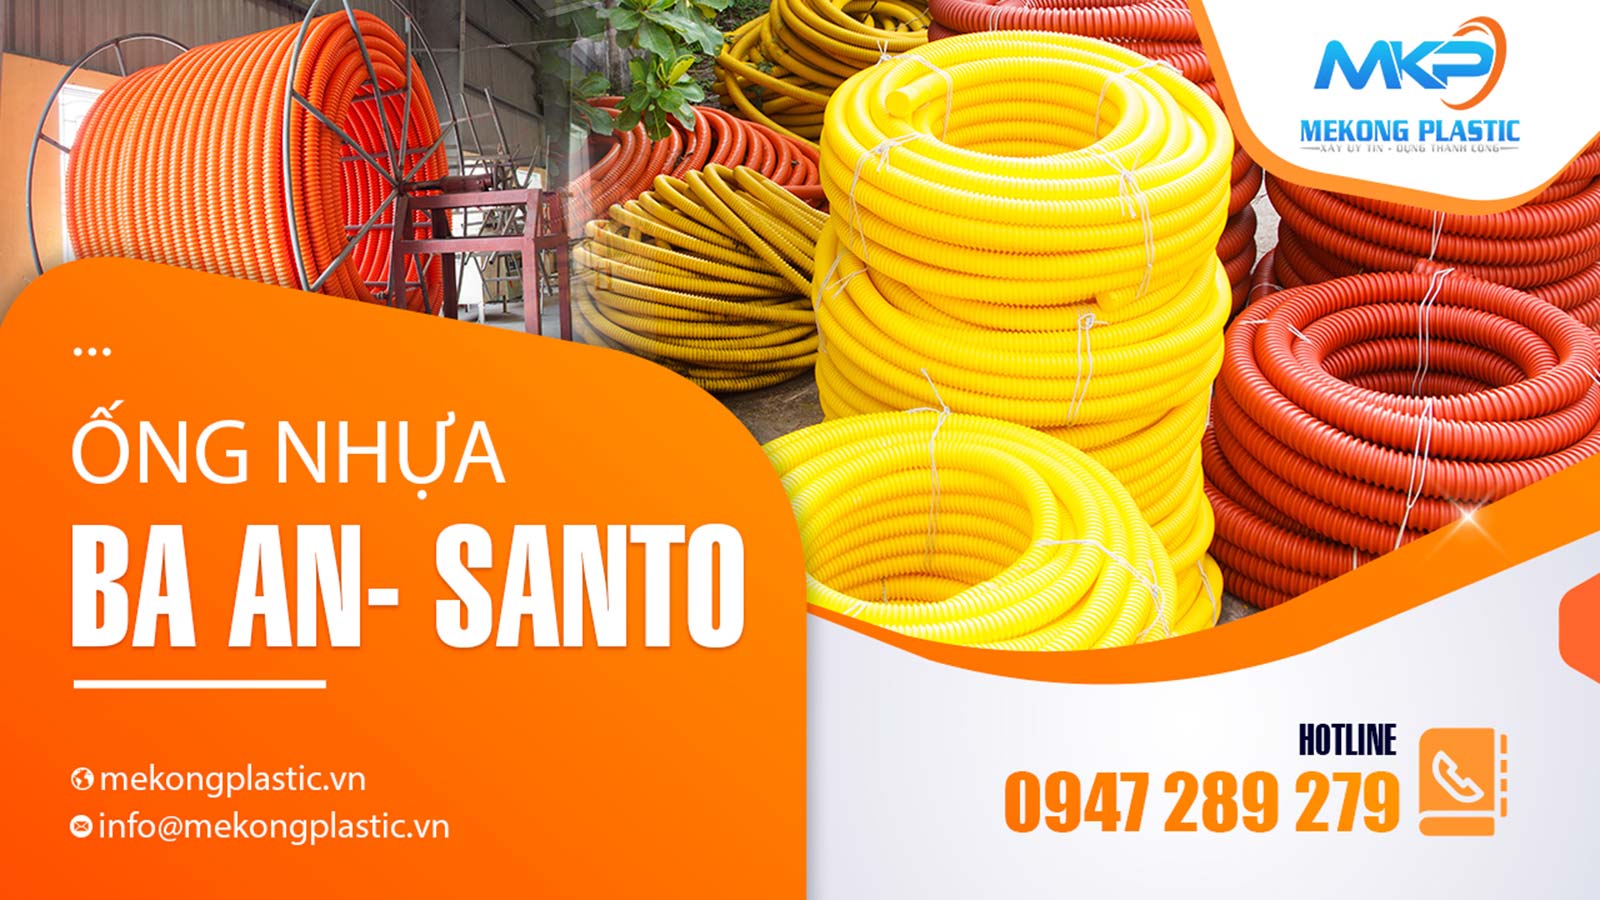 Mekong Palstic hiện đang phân phối các sản phẩm ống nhựa xoắn Santo-BaAn